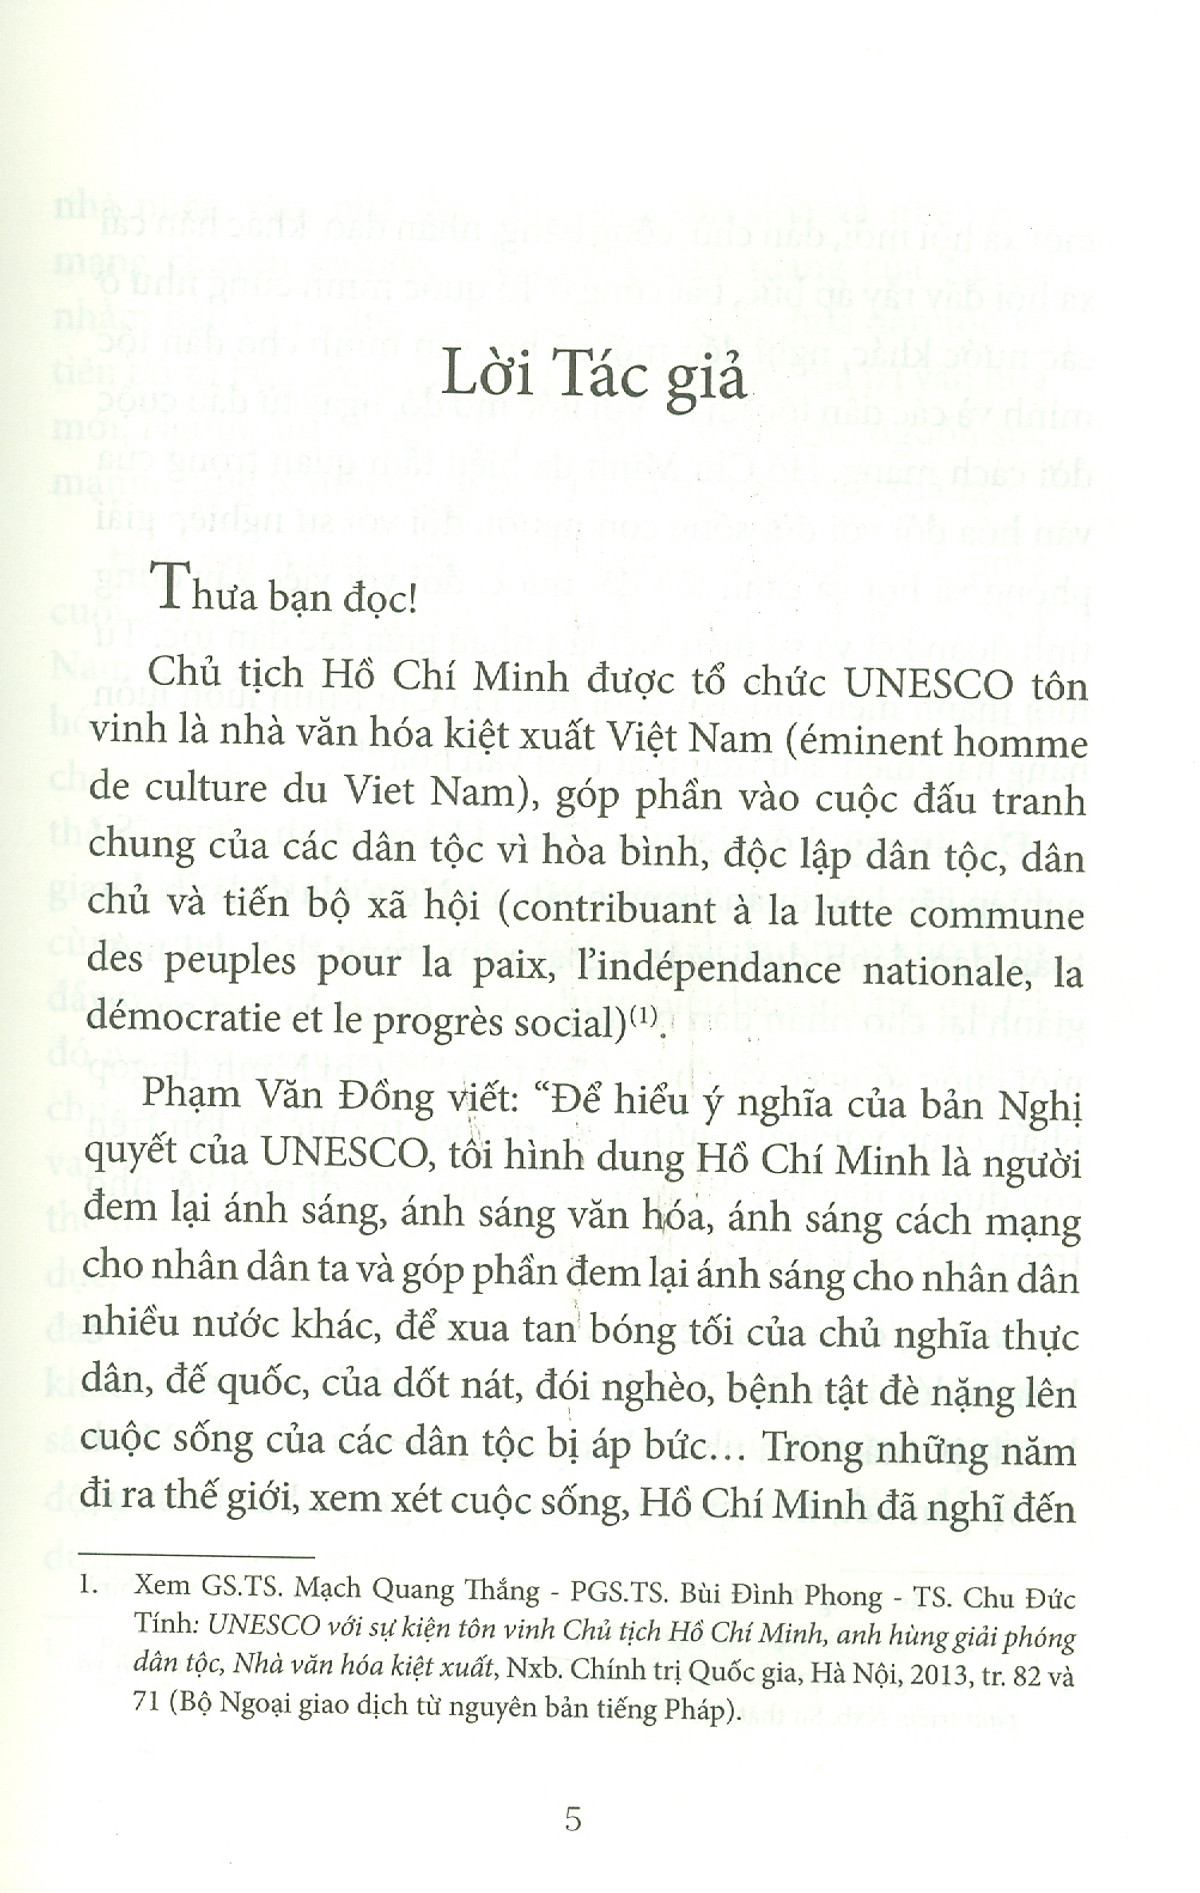 Hồ Chí Minh Văn Hóa Soi Đường Cho Quốc Dân Đi